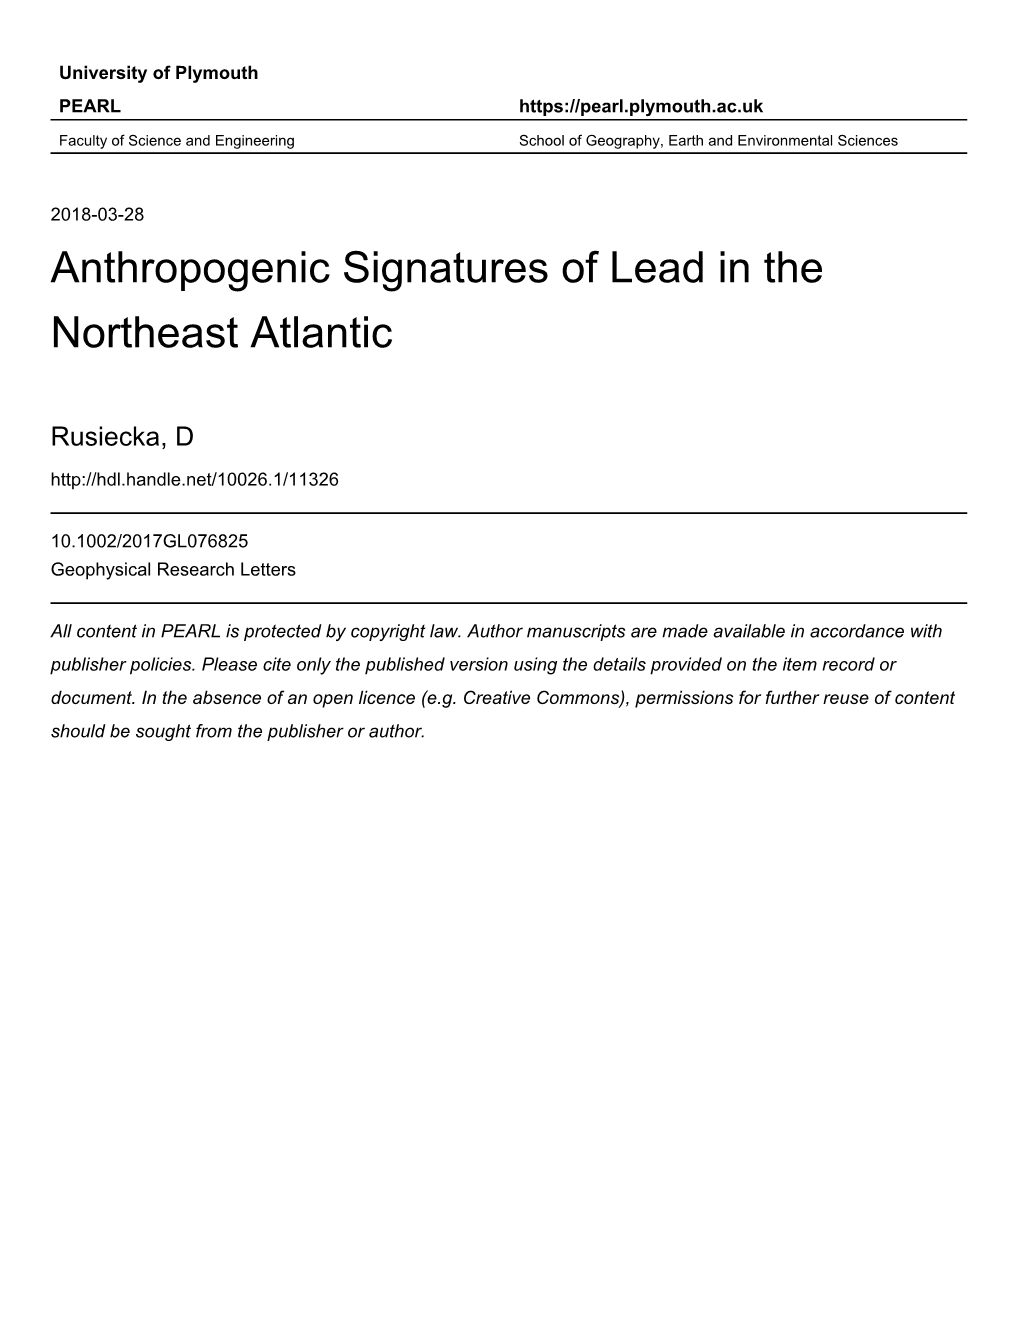 Anthropogenic Signatures of Lead in the Northeast Atlantic